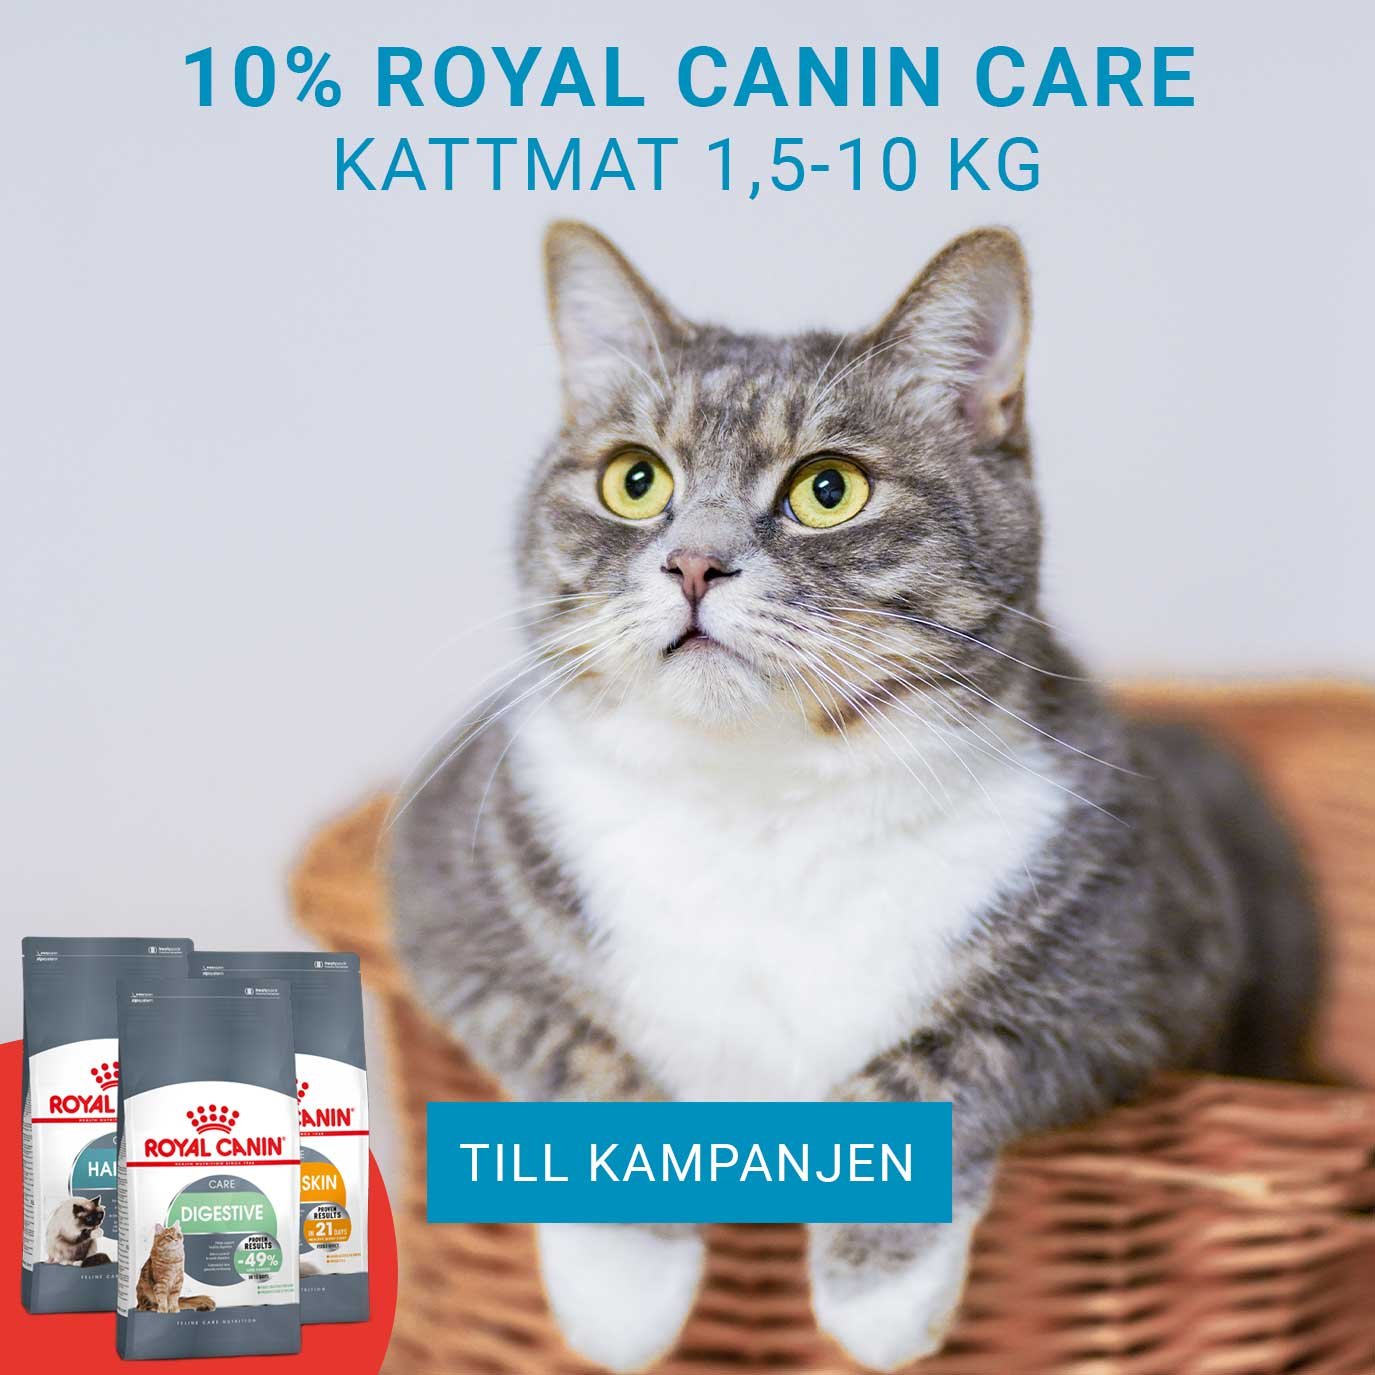 Kampanj på Royal Canin Care kattmat